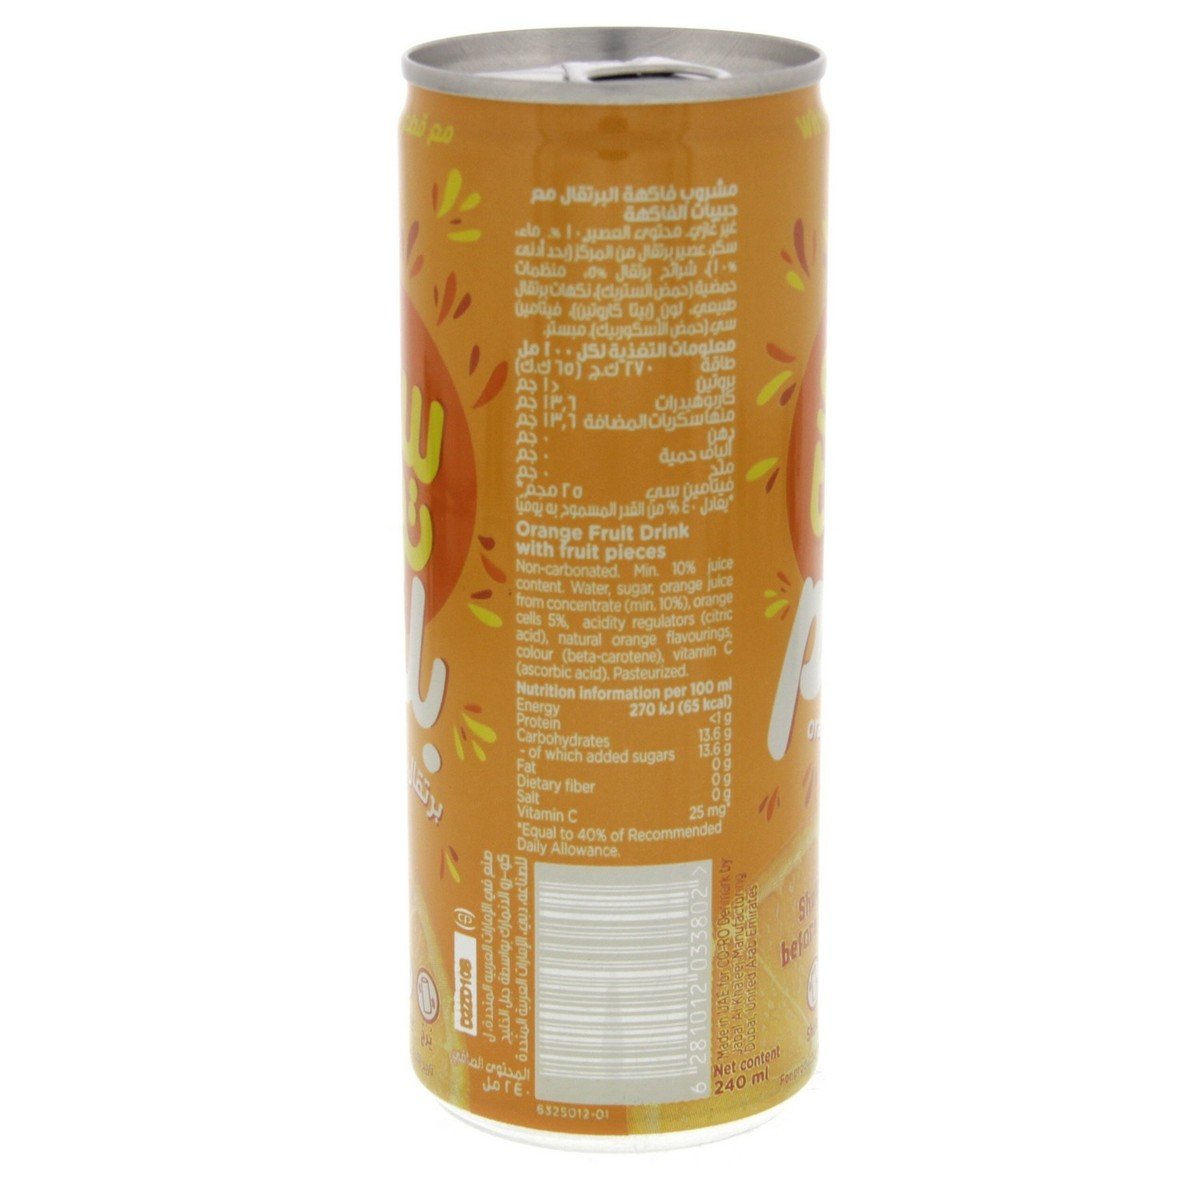 Sun Top Plus Orange Juice With Pulp 240 ml